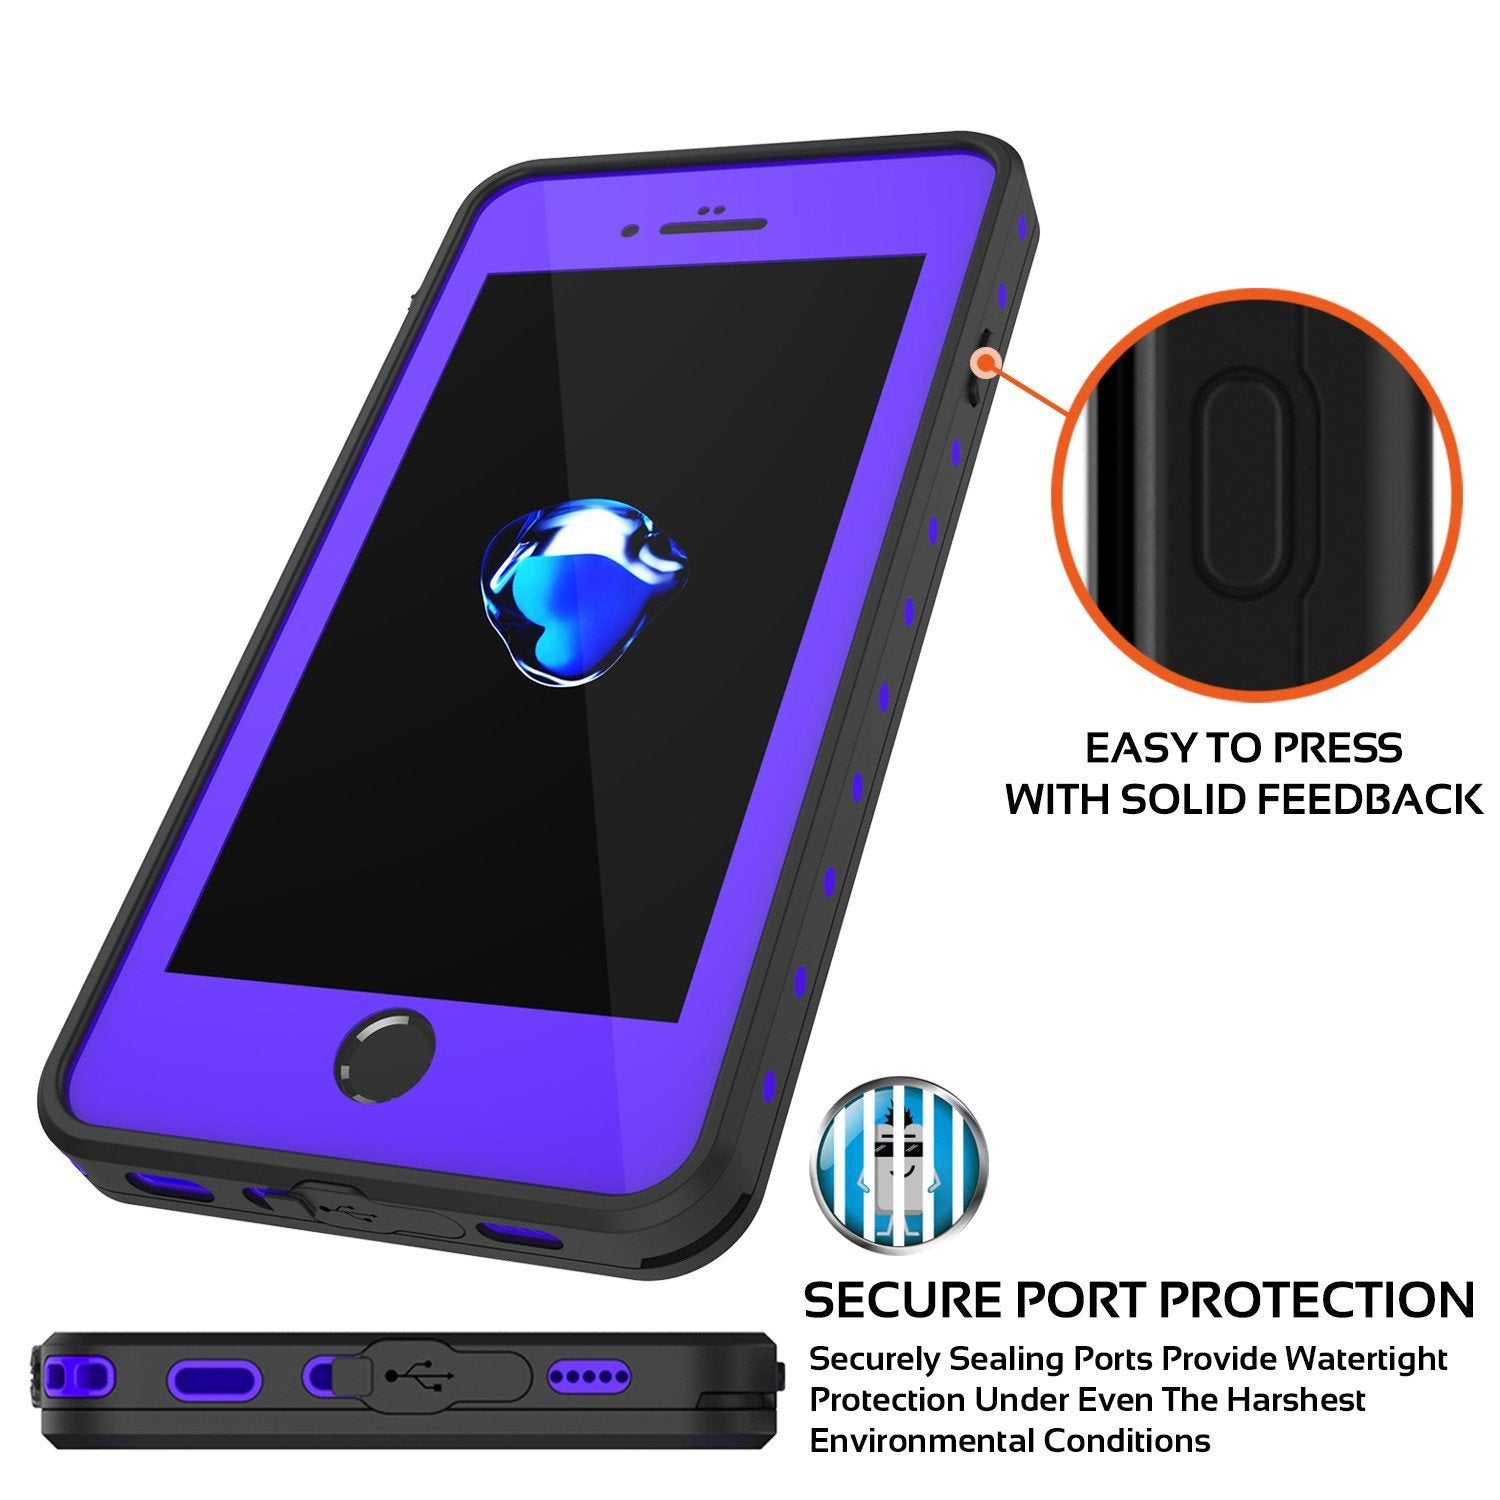 iPhone 8+ Plus Waterproof IP68 Case, Punkcase [Purple] [StudStar Series] [Slim Fit] [Dirtproof] - PunkCase NZ